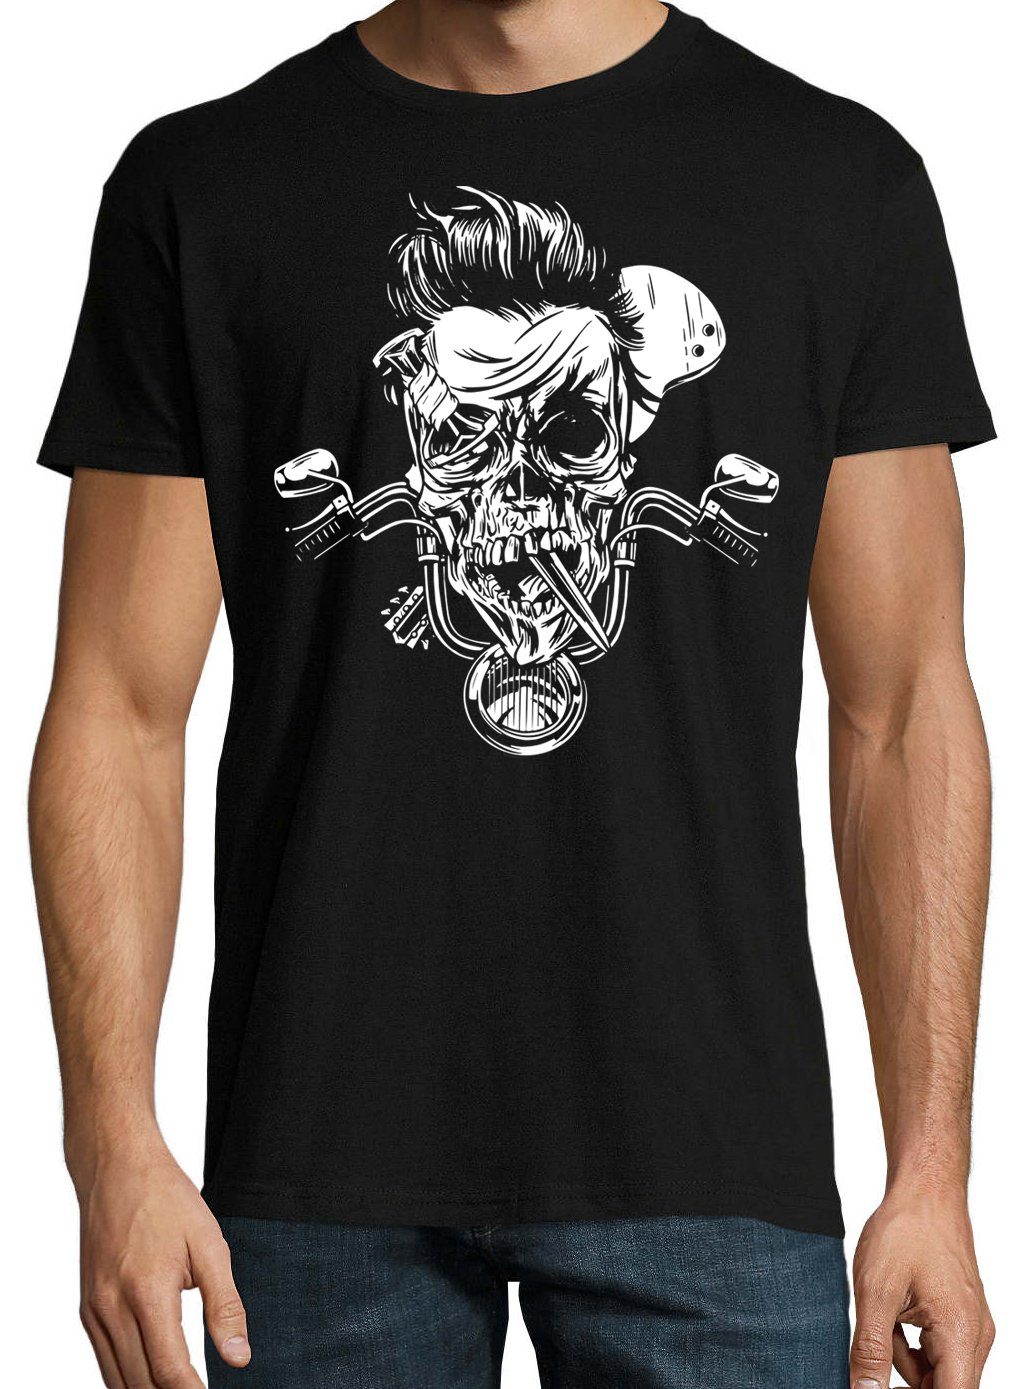 Youth Herren mit Shirt Designz Skull Biker Zombie T-Shirt trendigem Frontprint Schwarz